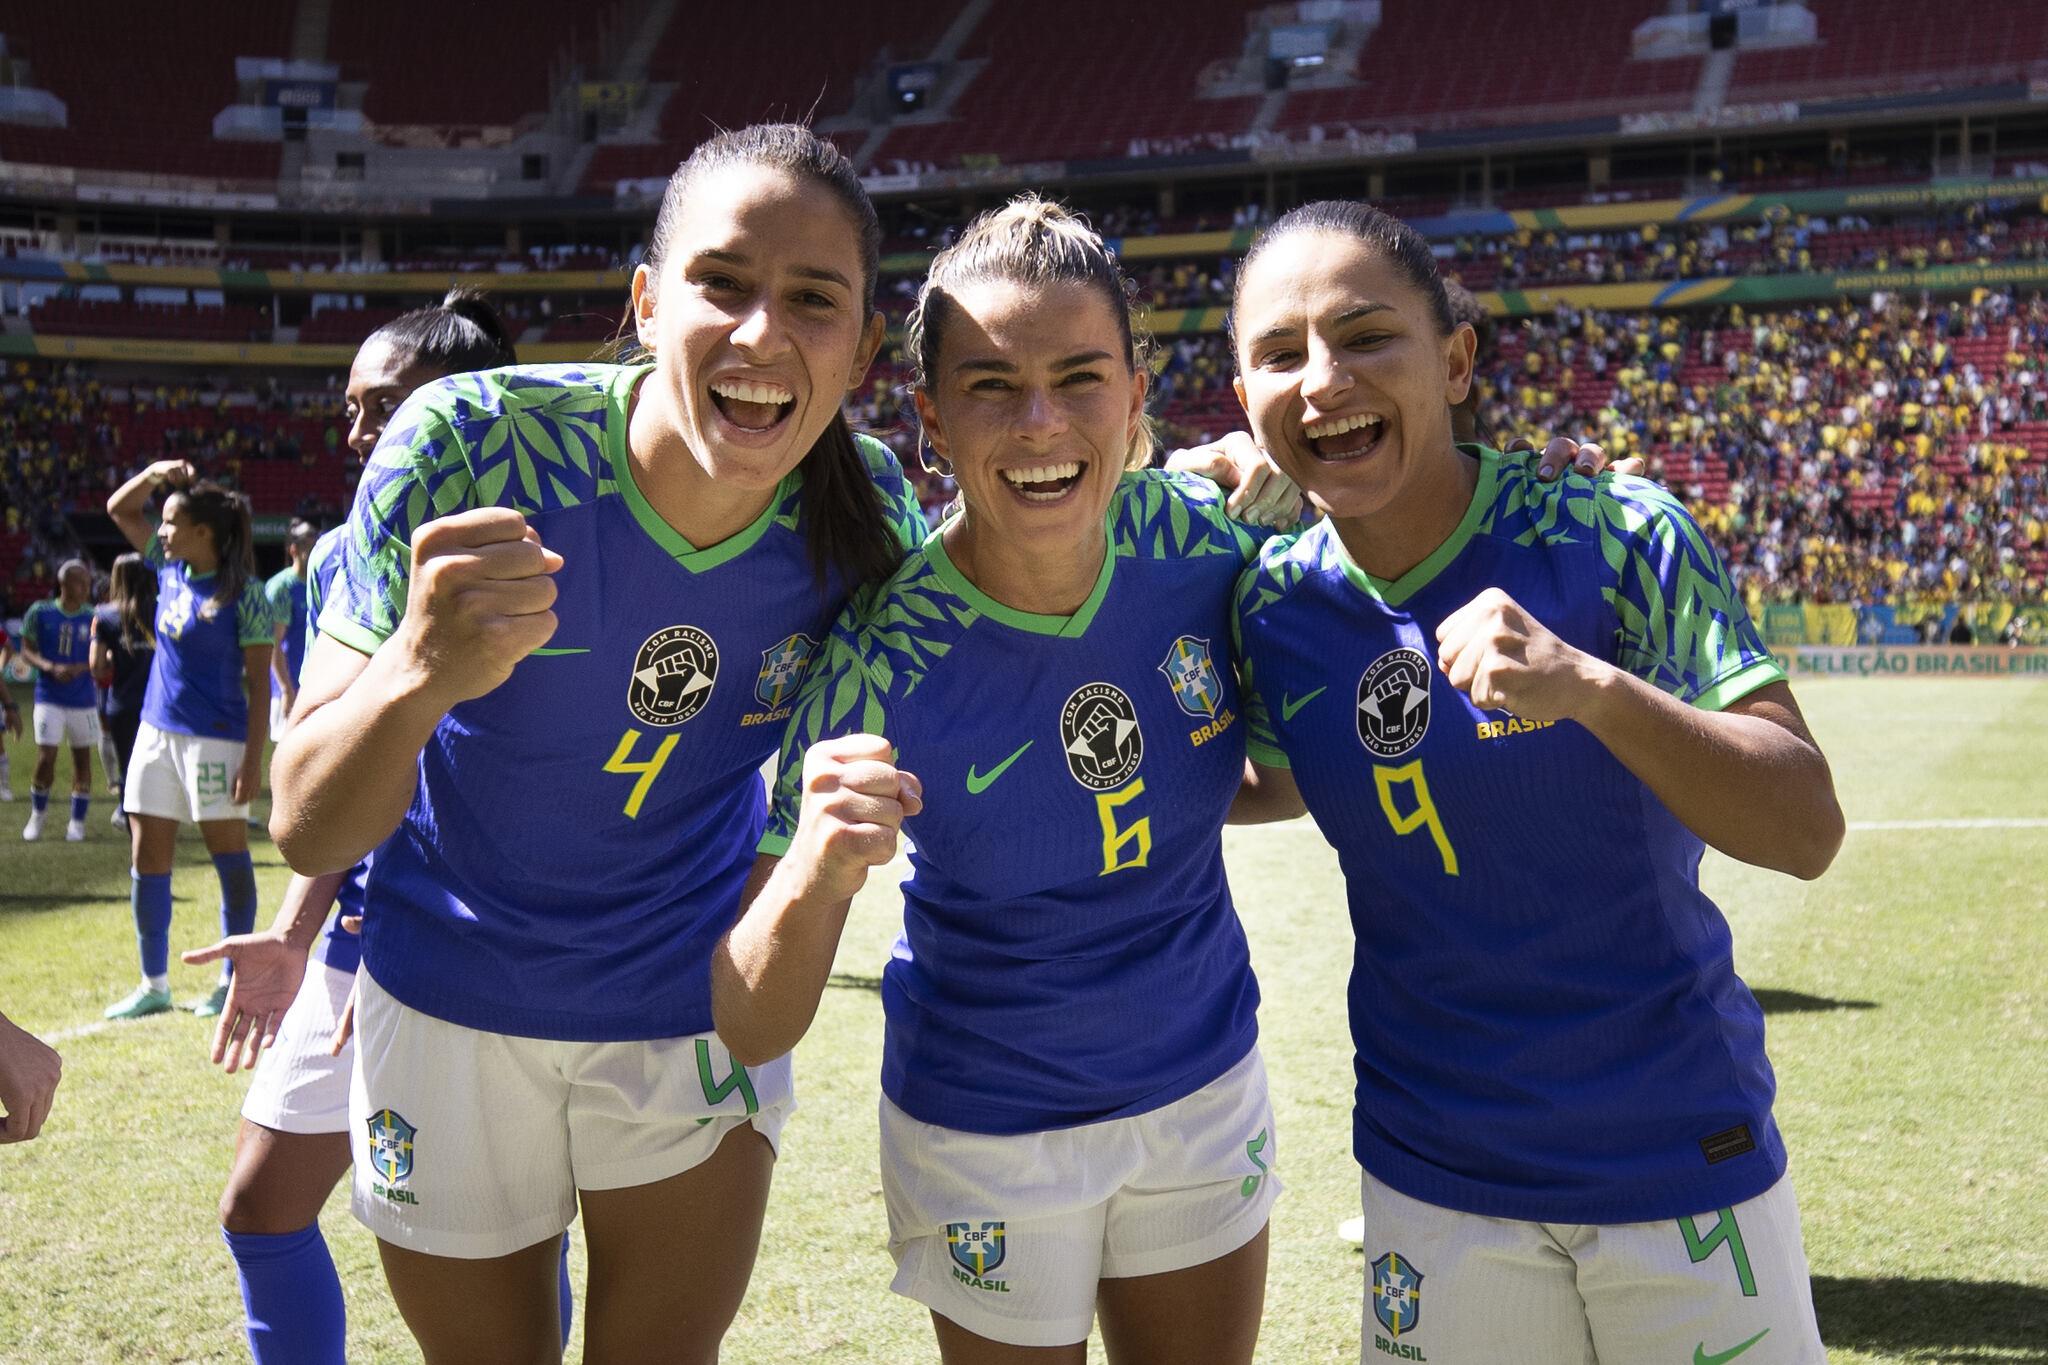 Seleção feminina goleia Chile em último jogo antes da Copa do